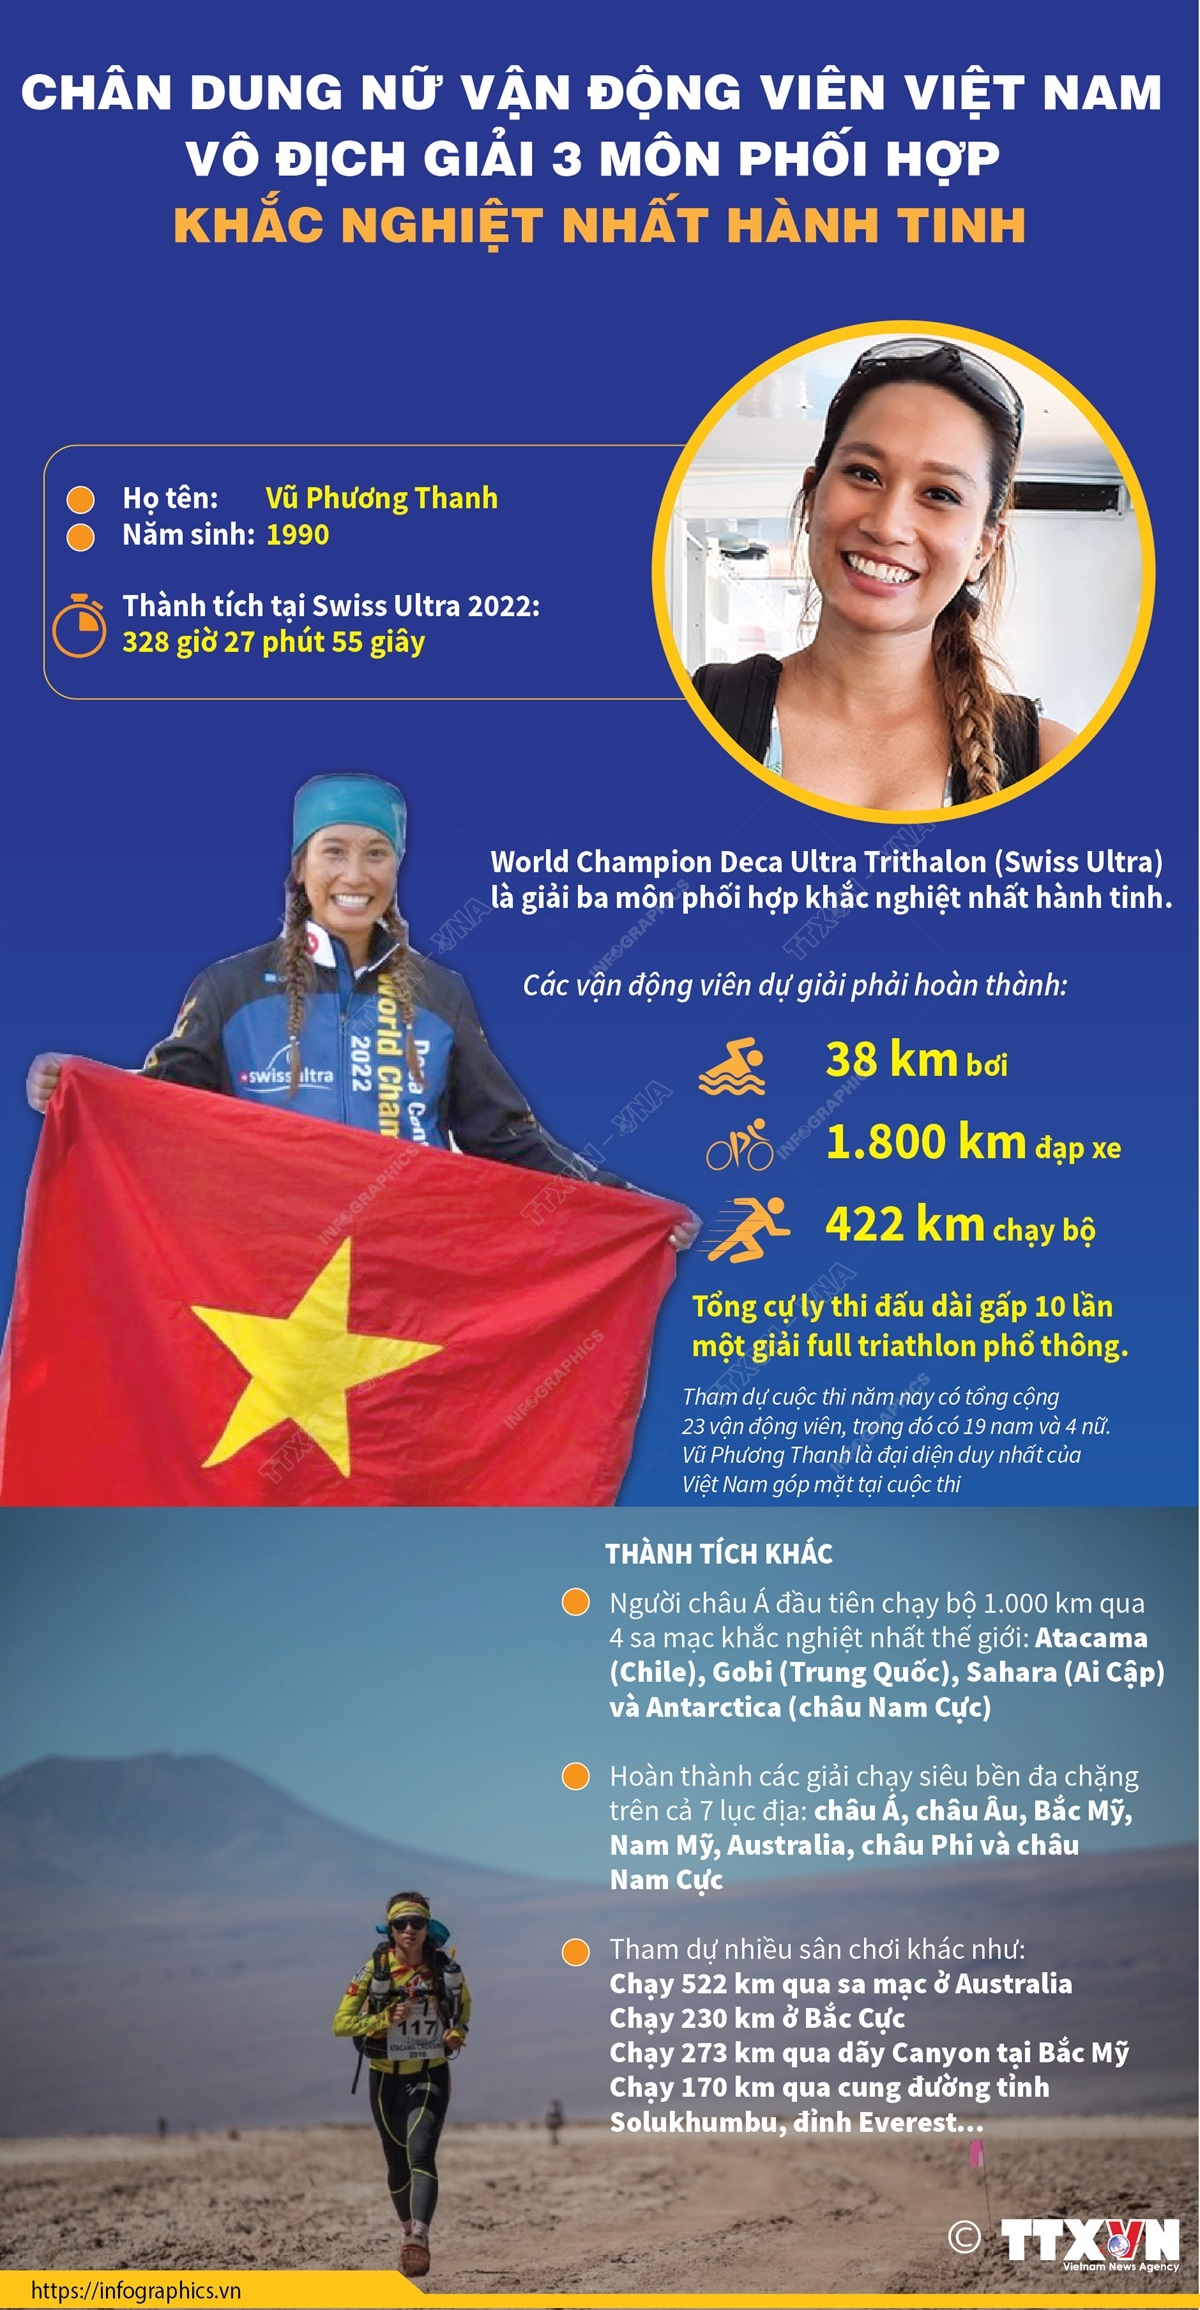 Nữ vận động viên Việt Nam đầu tiên giành chức vô địch thế giới 3 môn phối hợp